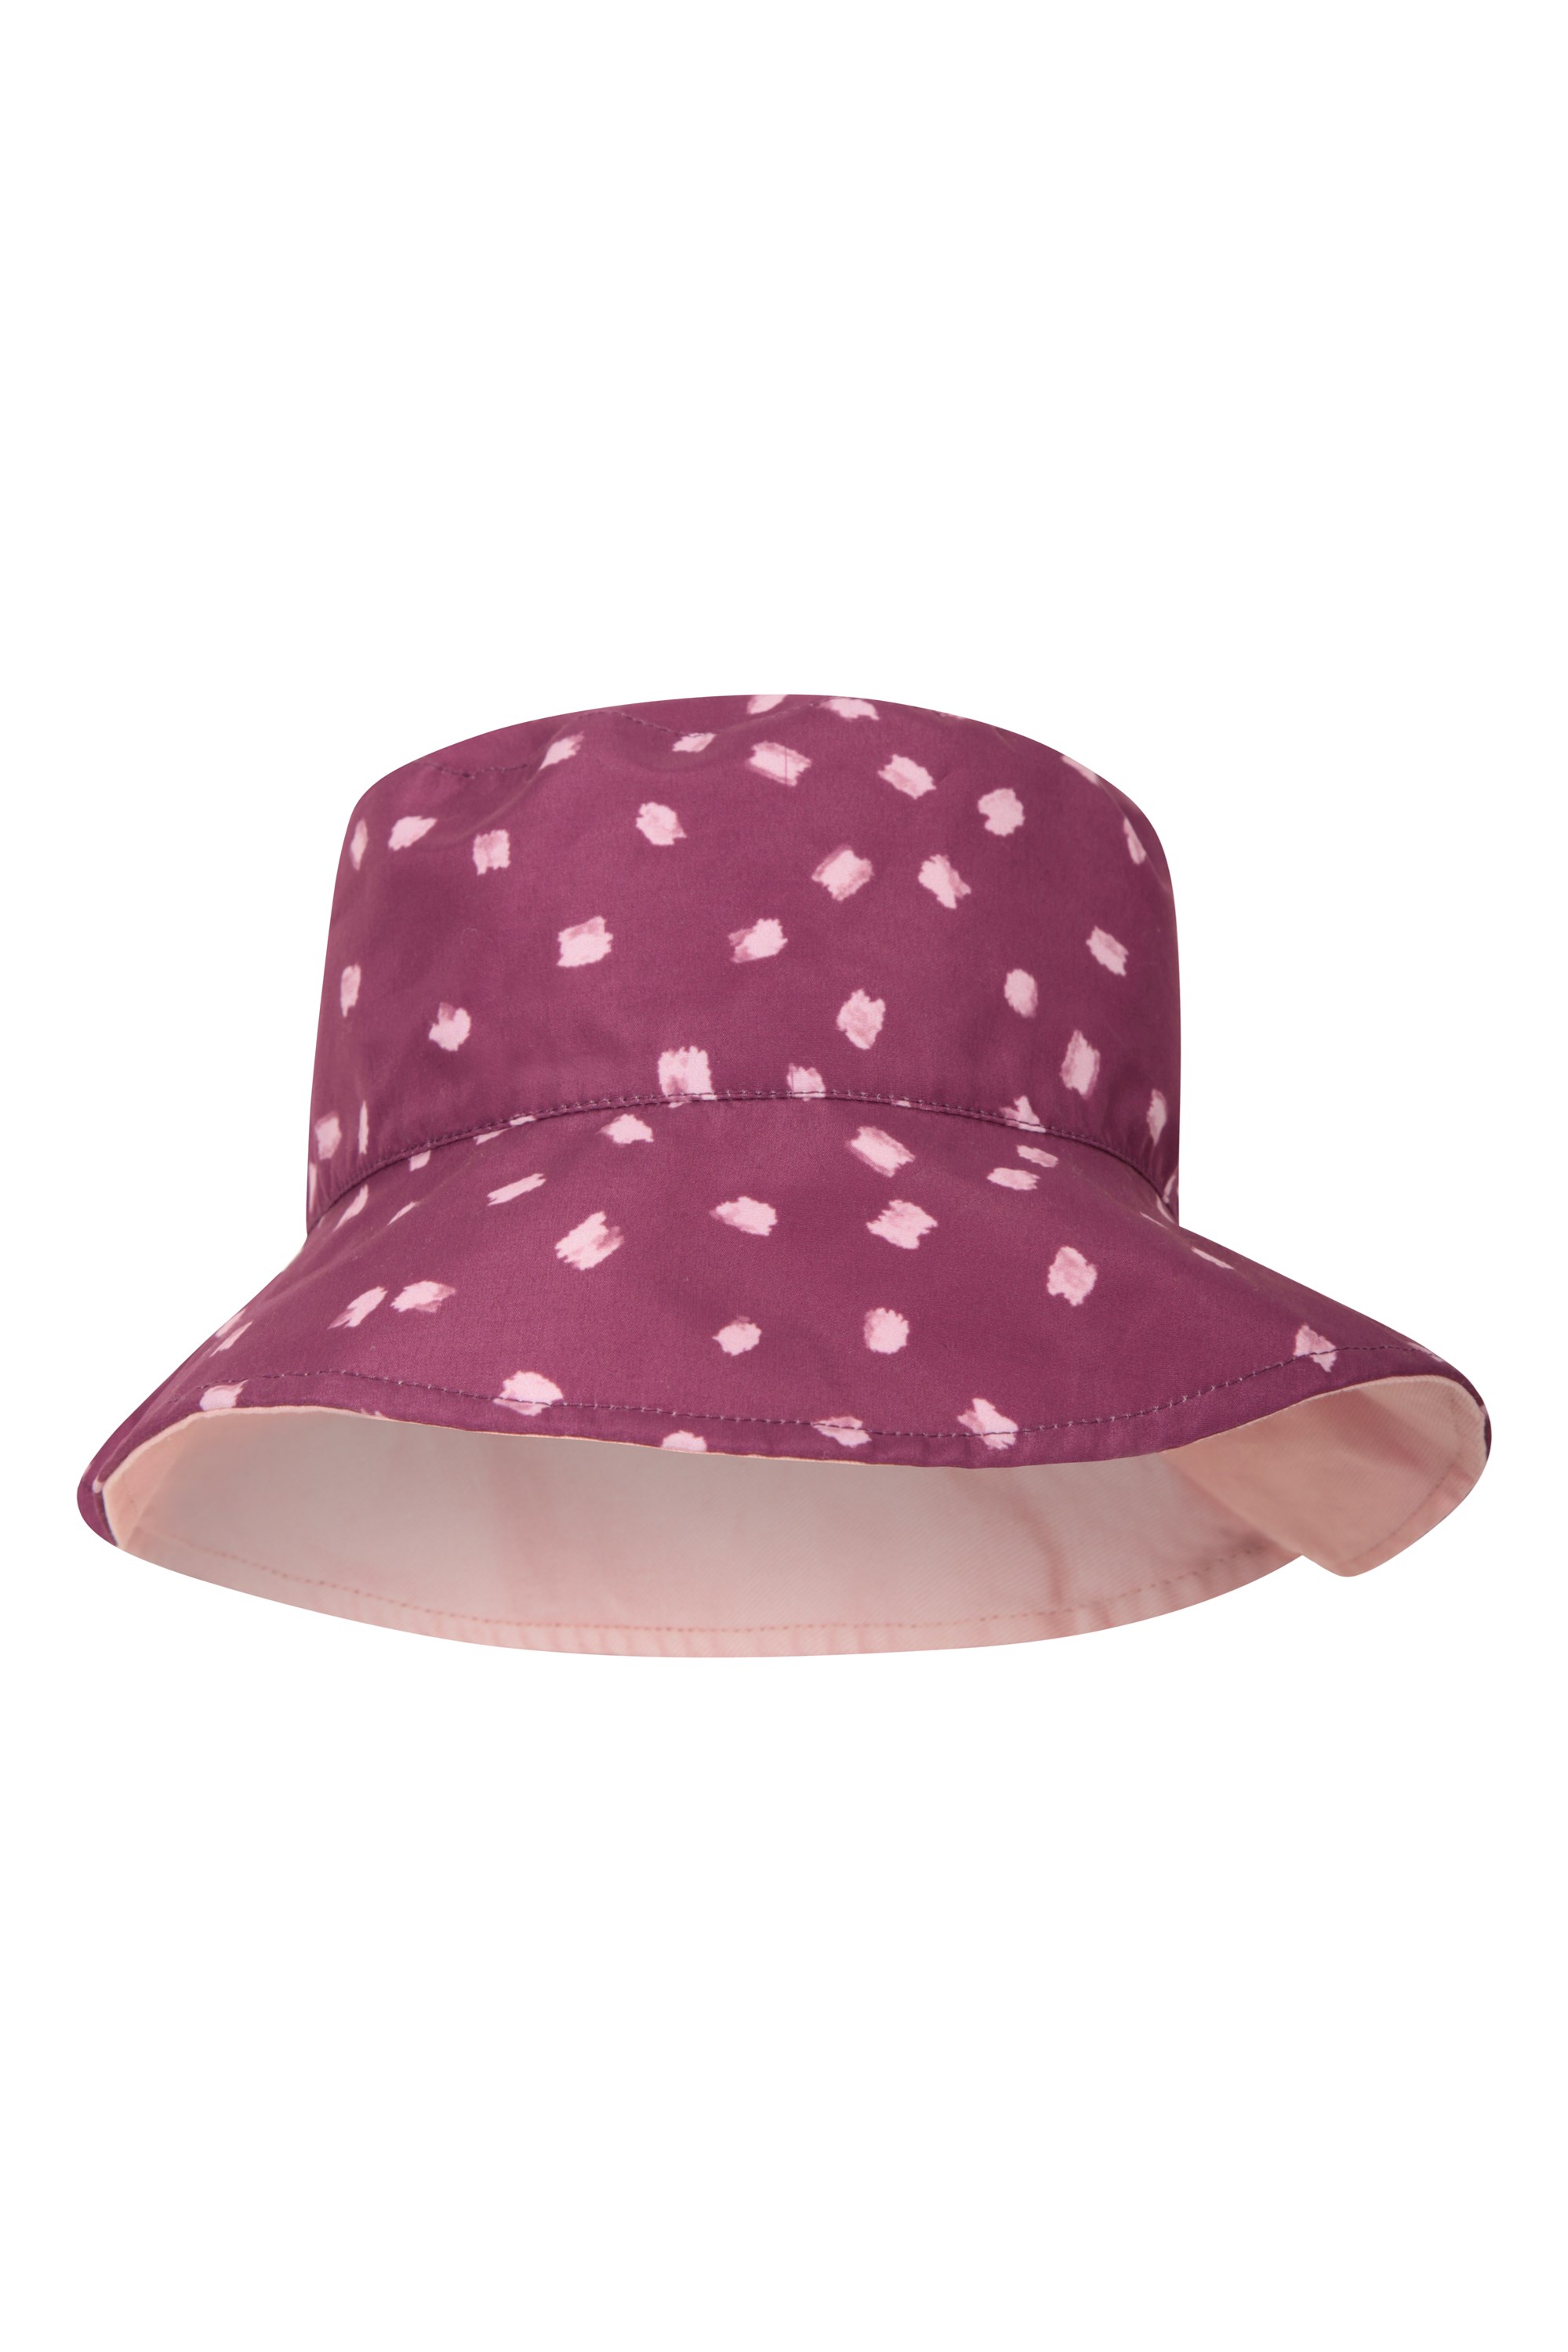 Reversible Womens Printed Bucket Hat